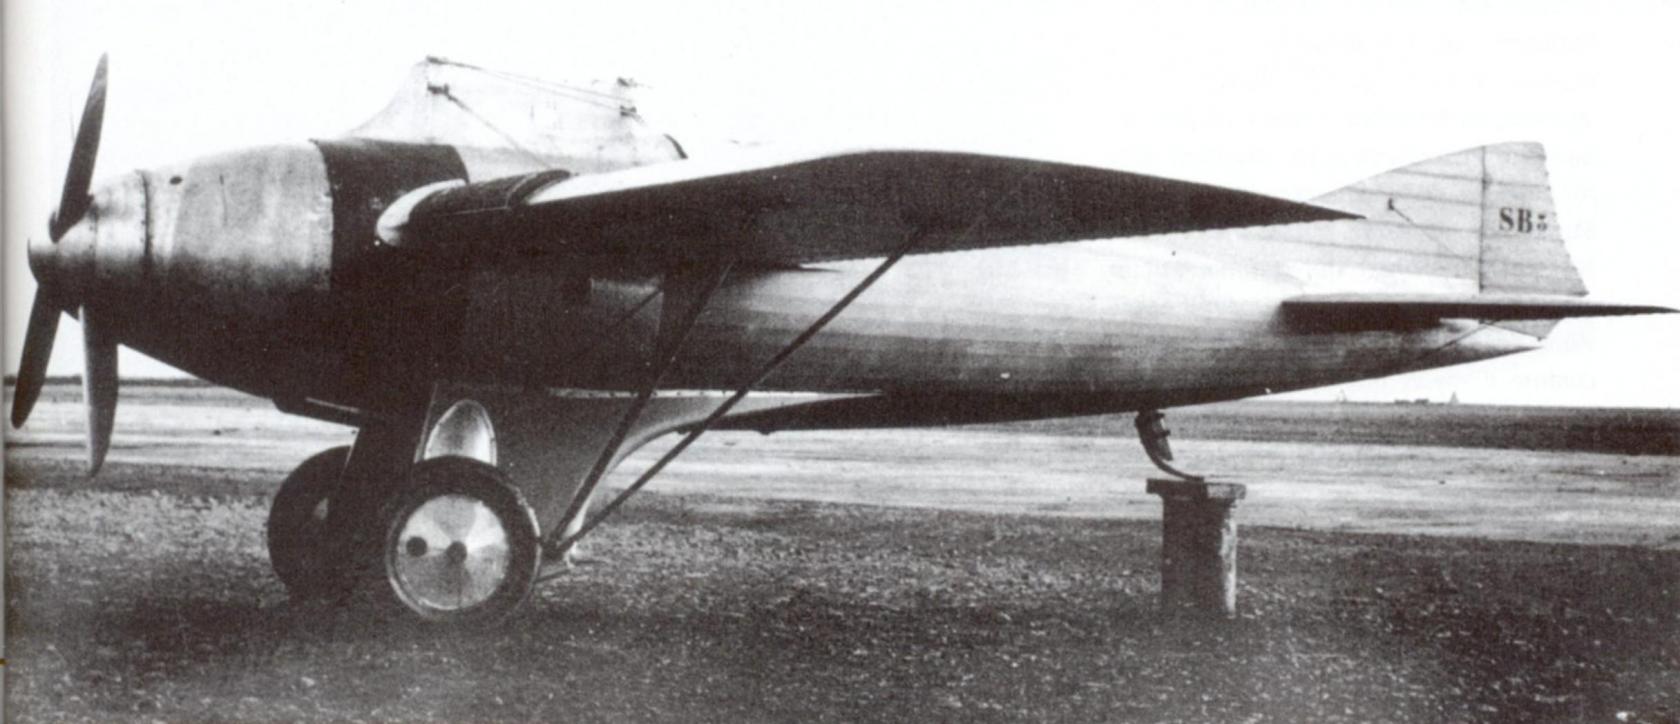 Гоночный самолет Salmson-Béchereau SB 3. Франция